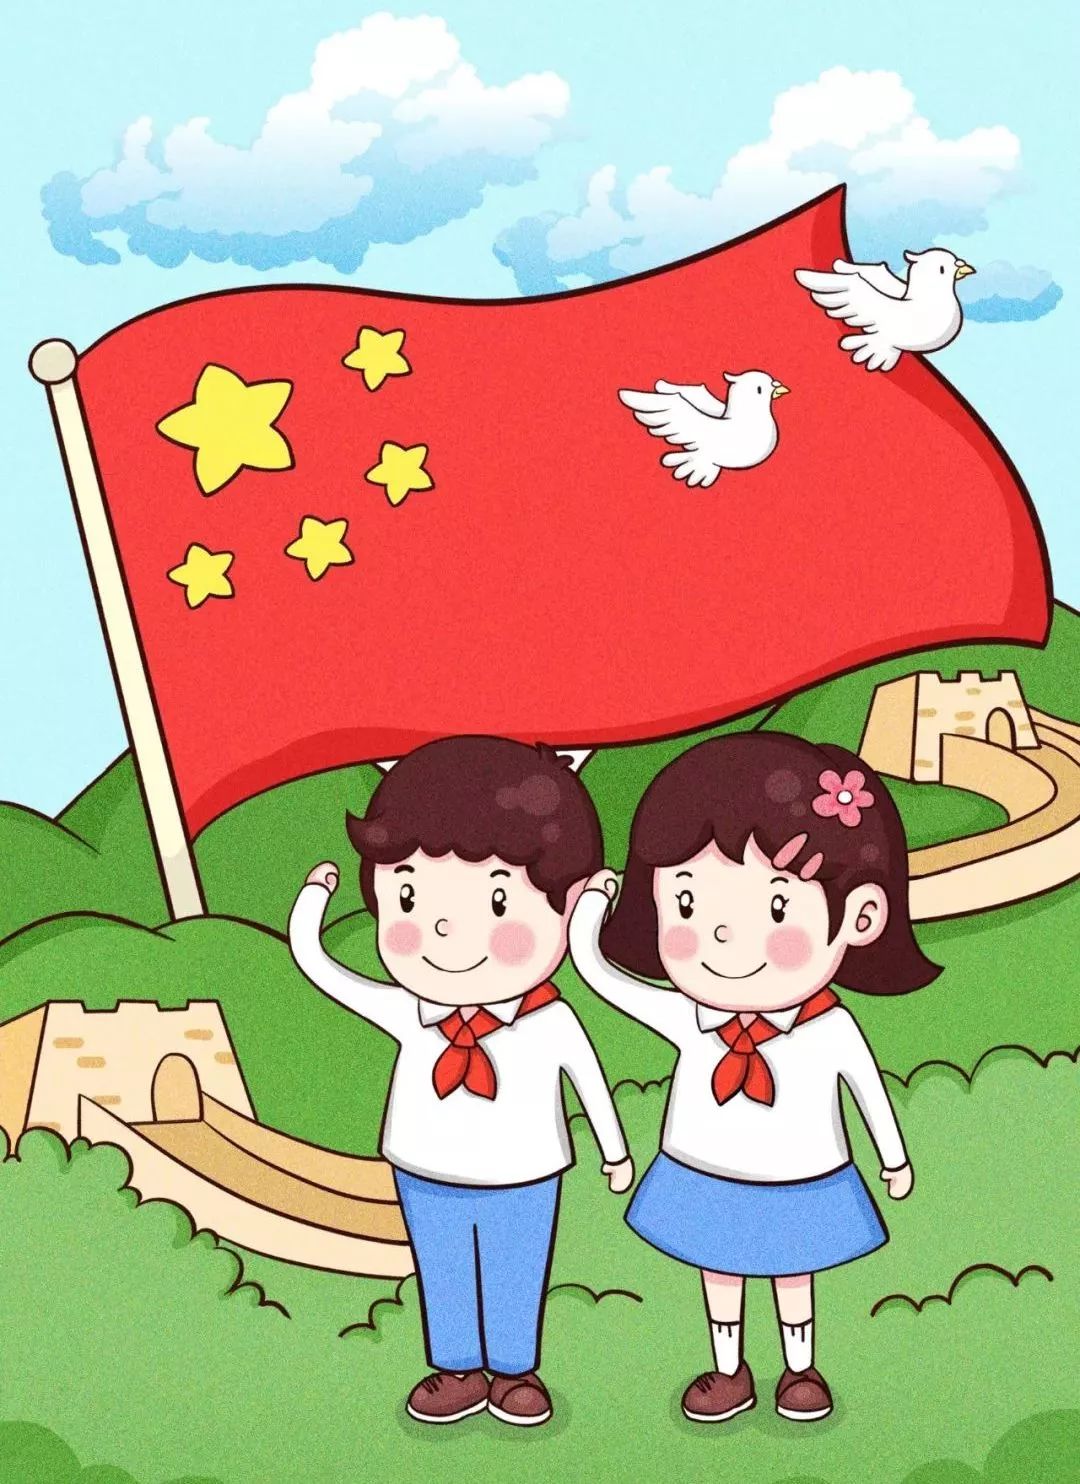 简笔画中国国旗图片